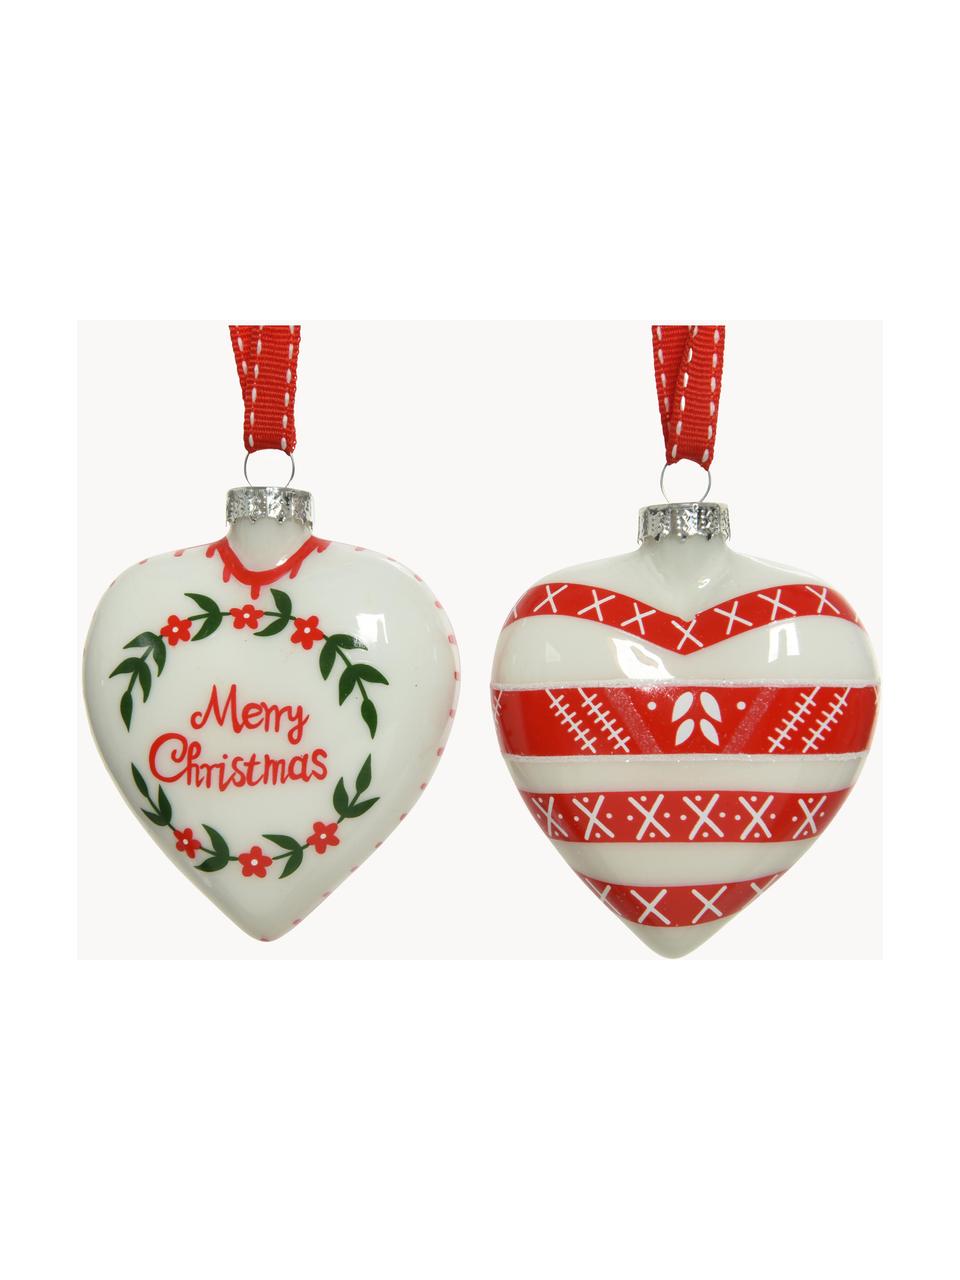 Kerstboomhanger Hearts, set van 4, Rood, wit, groen, Ø 8 x H 8 cm